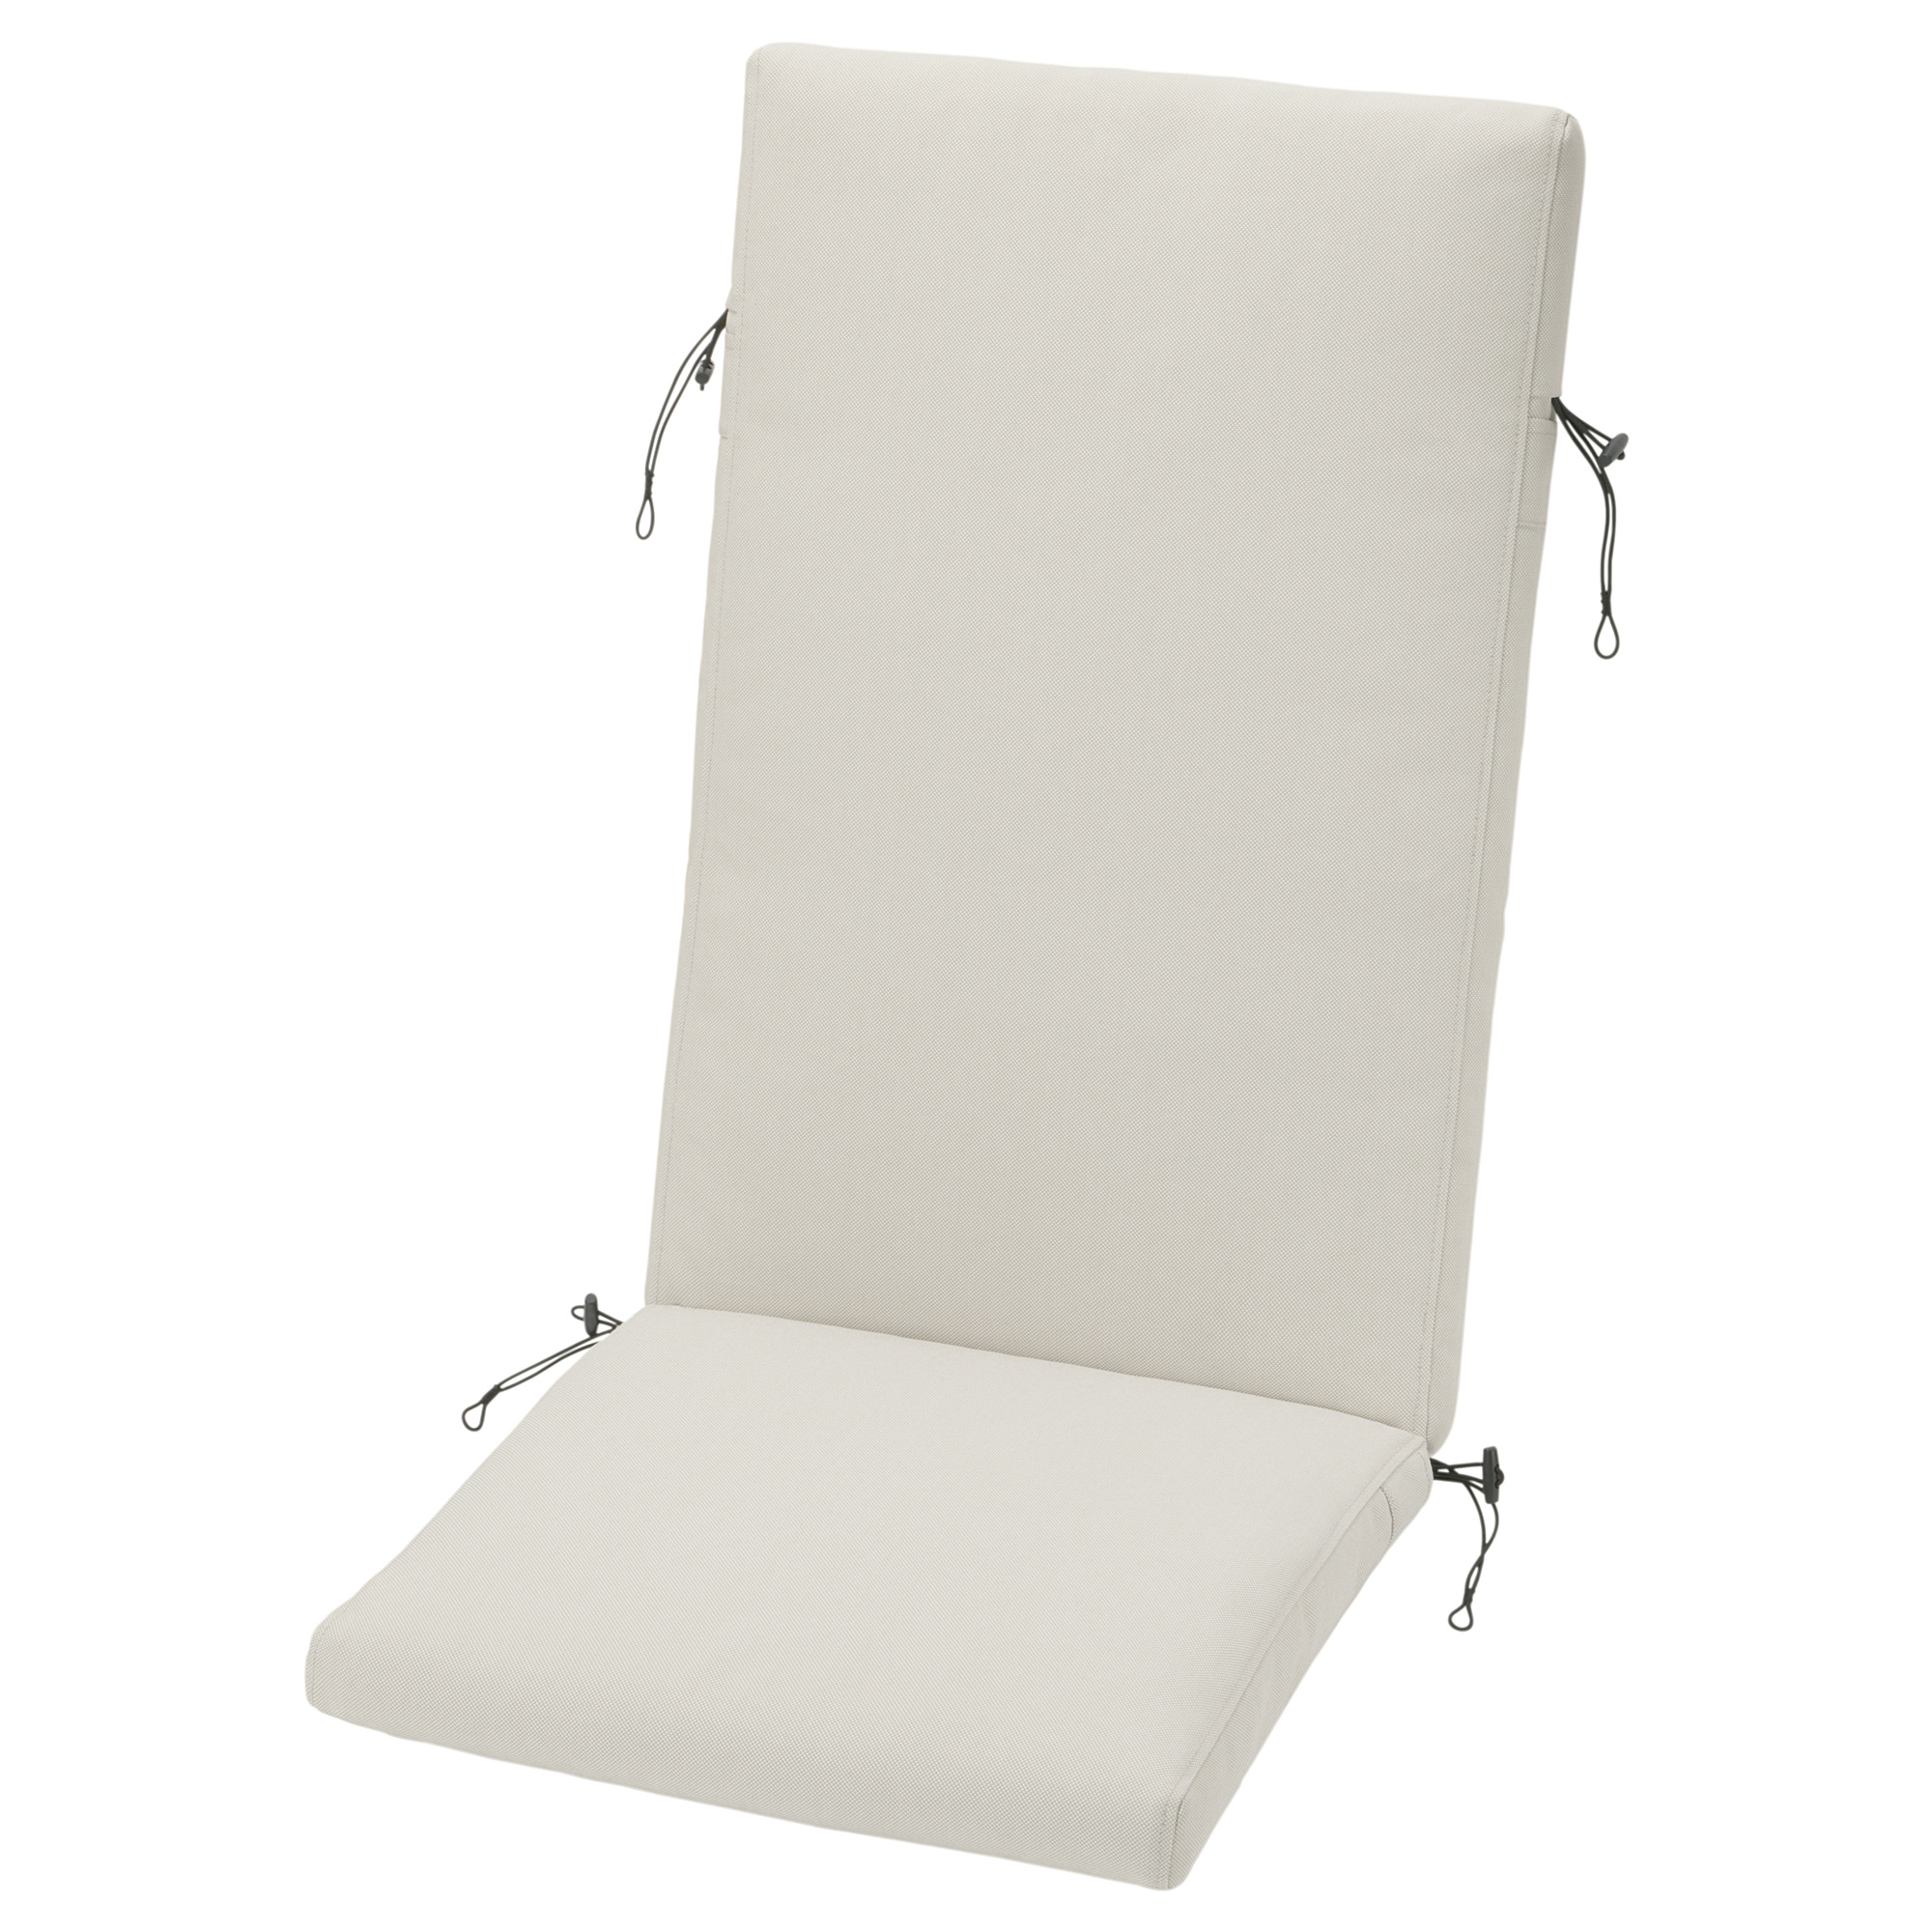 FRÖSÖN cover for seat/back cushion